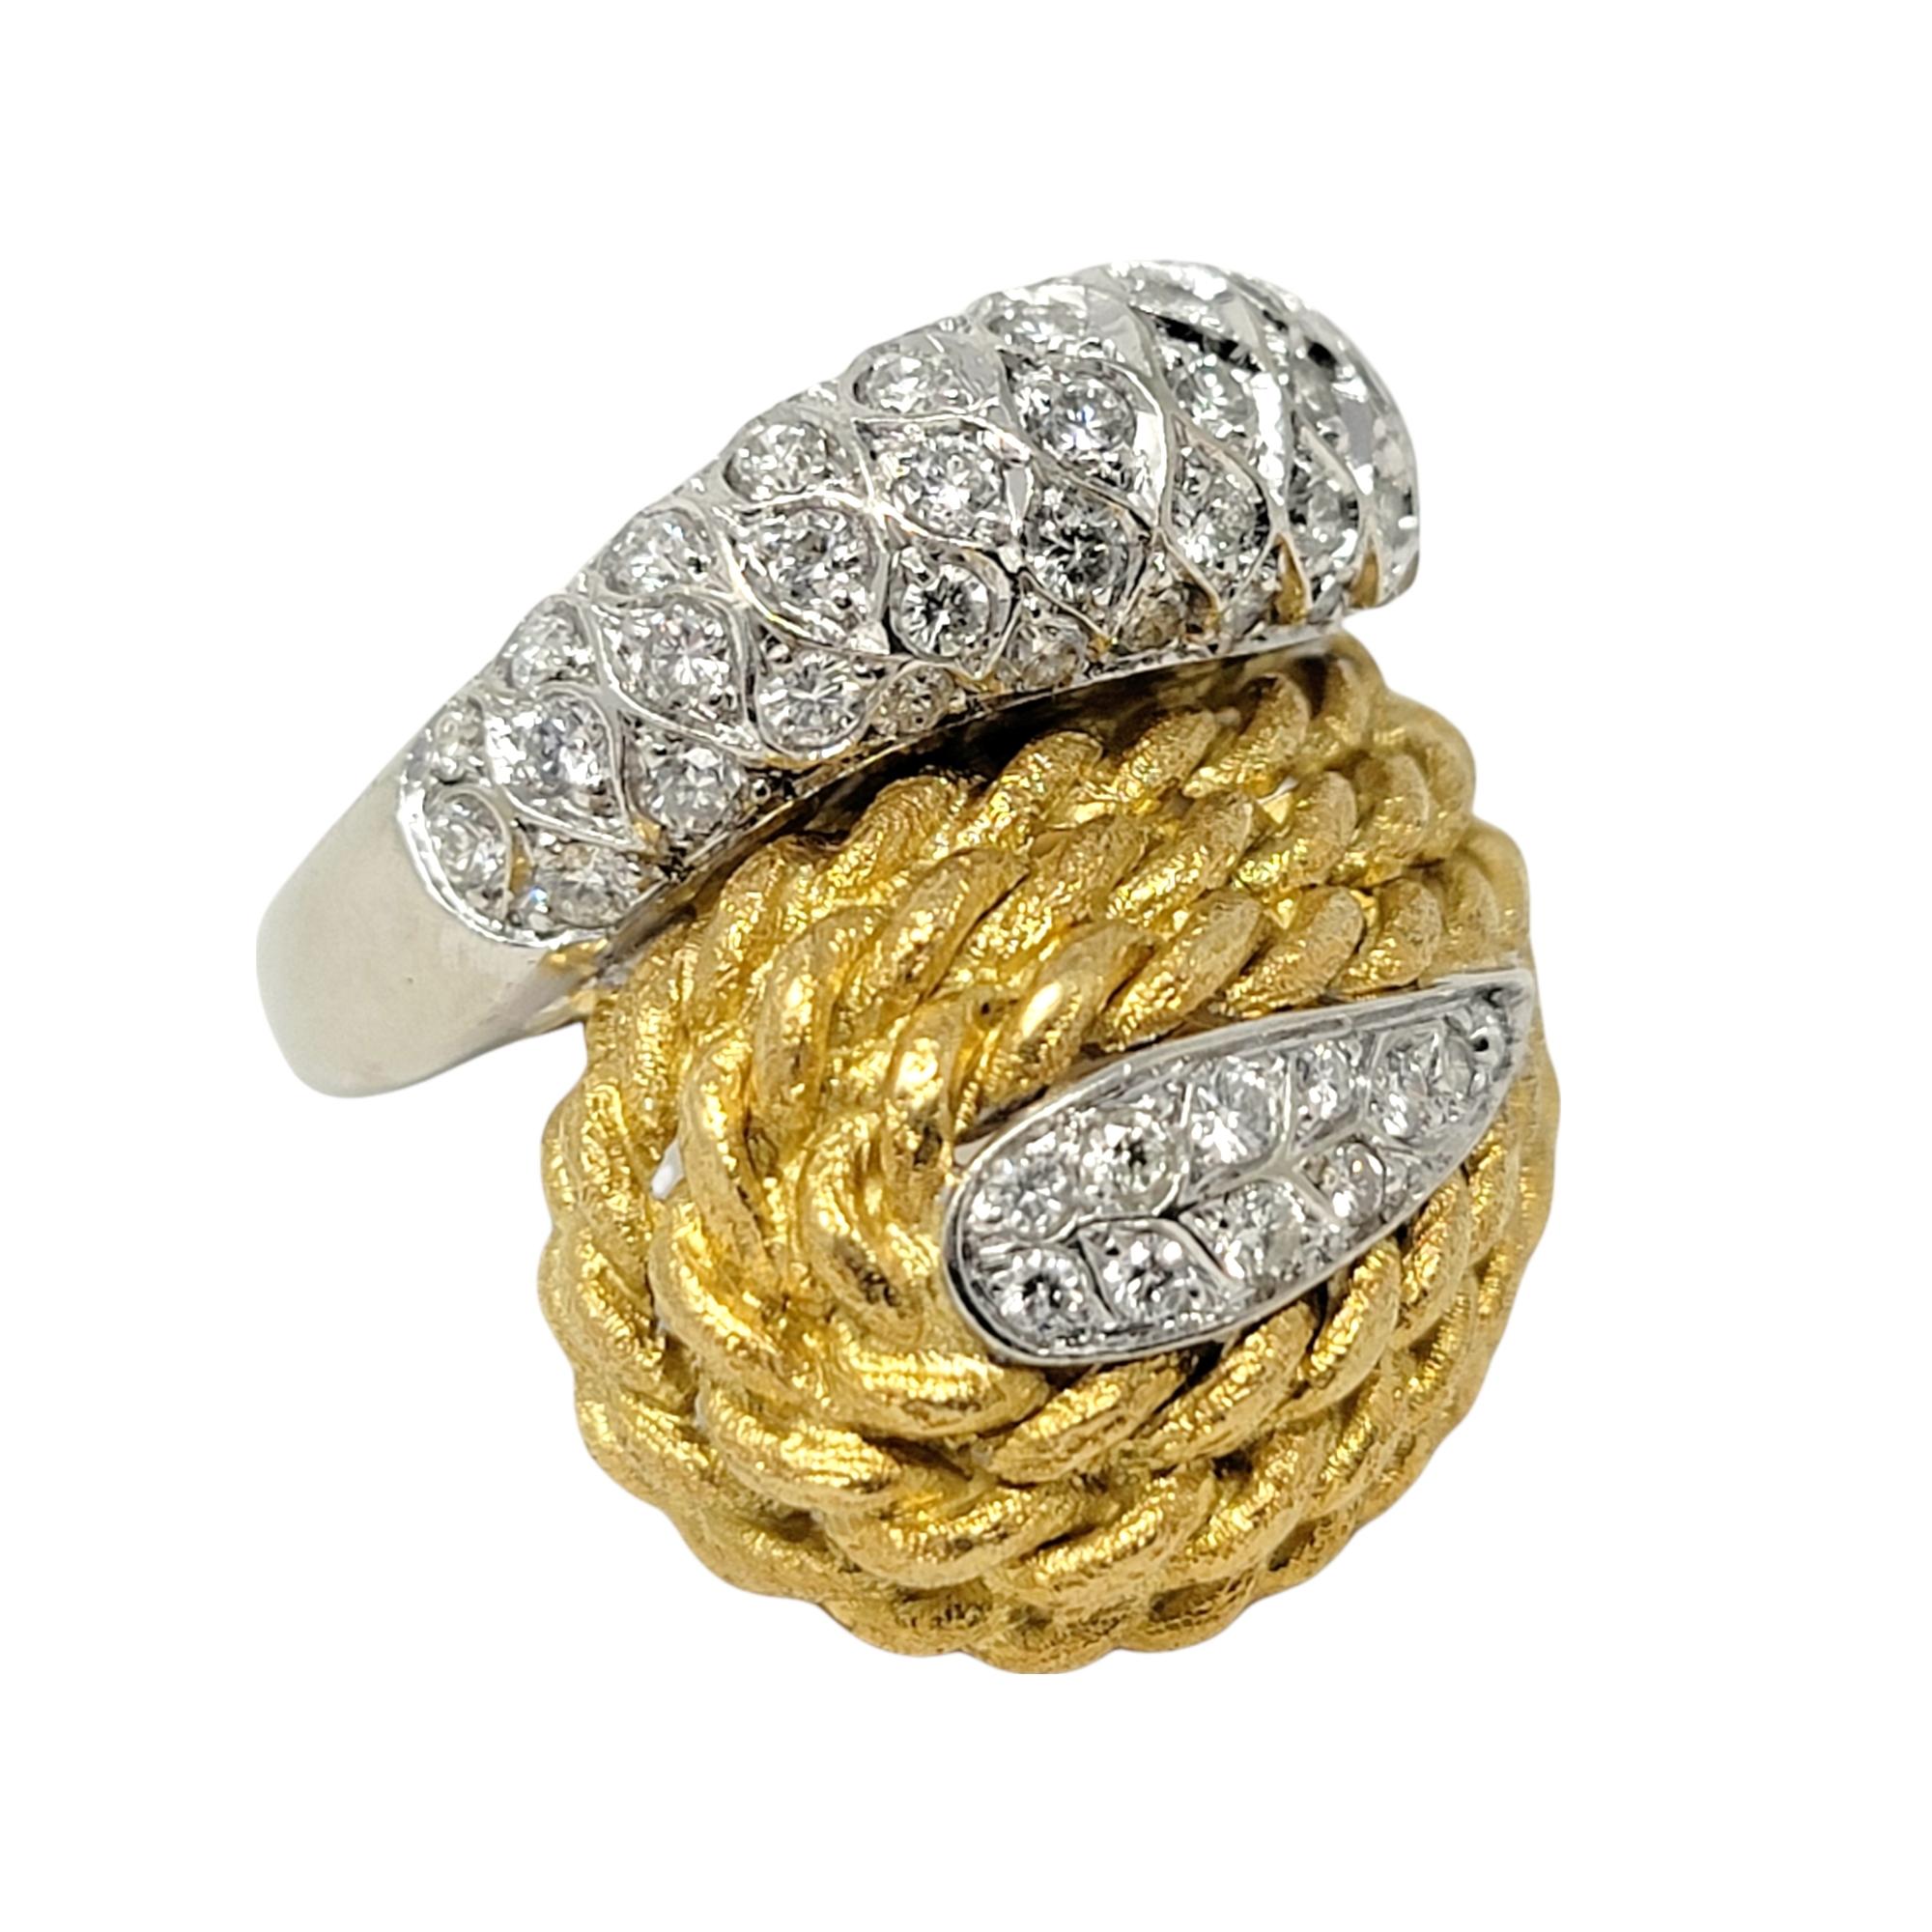 Ringgröße: 5.25

Atemberaubender, moderner Ring im Wrap-Style aus zweifarbigem Gold mit glitzernden Diamantdetails. 

Ringgröße: 5.25
Gewicht: 15 Gramm
Diamanten: 1.00 ctw
Diamant-Schliff: Runder Brillant
Farbe des Diamanten: F-G
Reinheit des